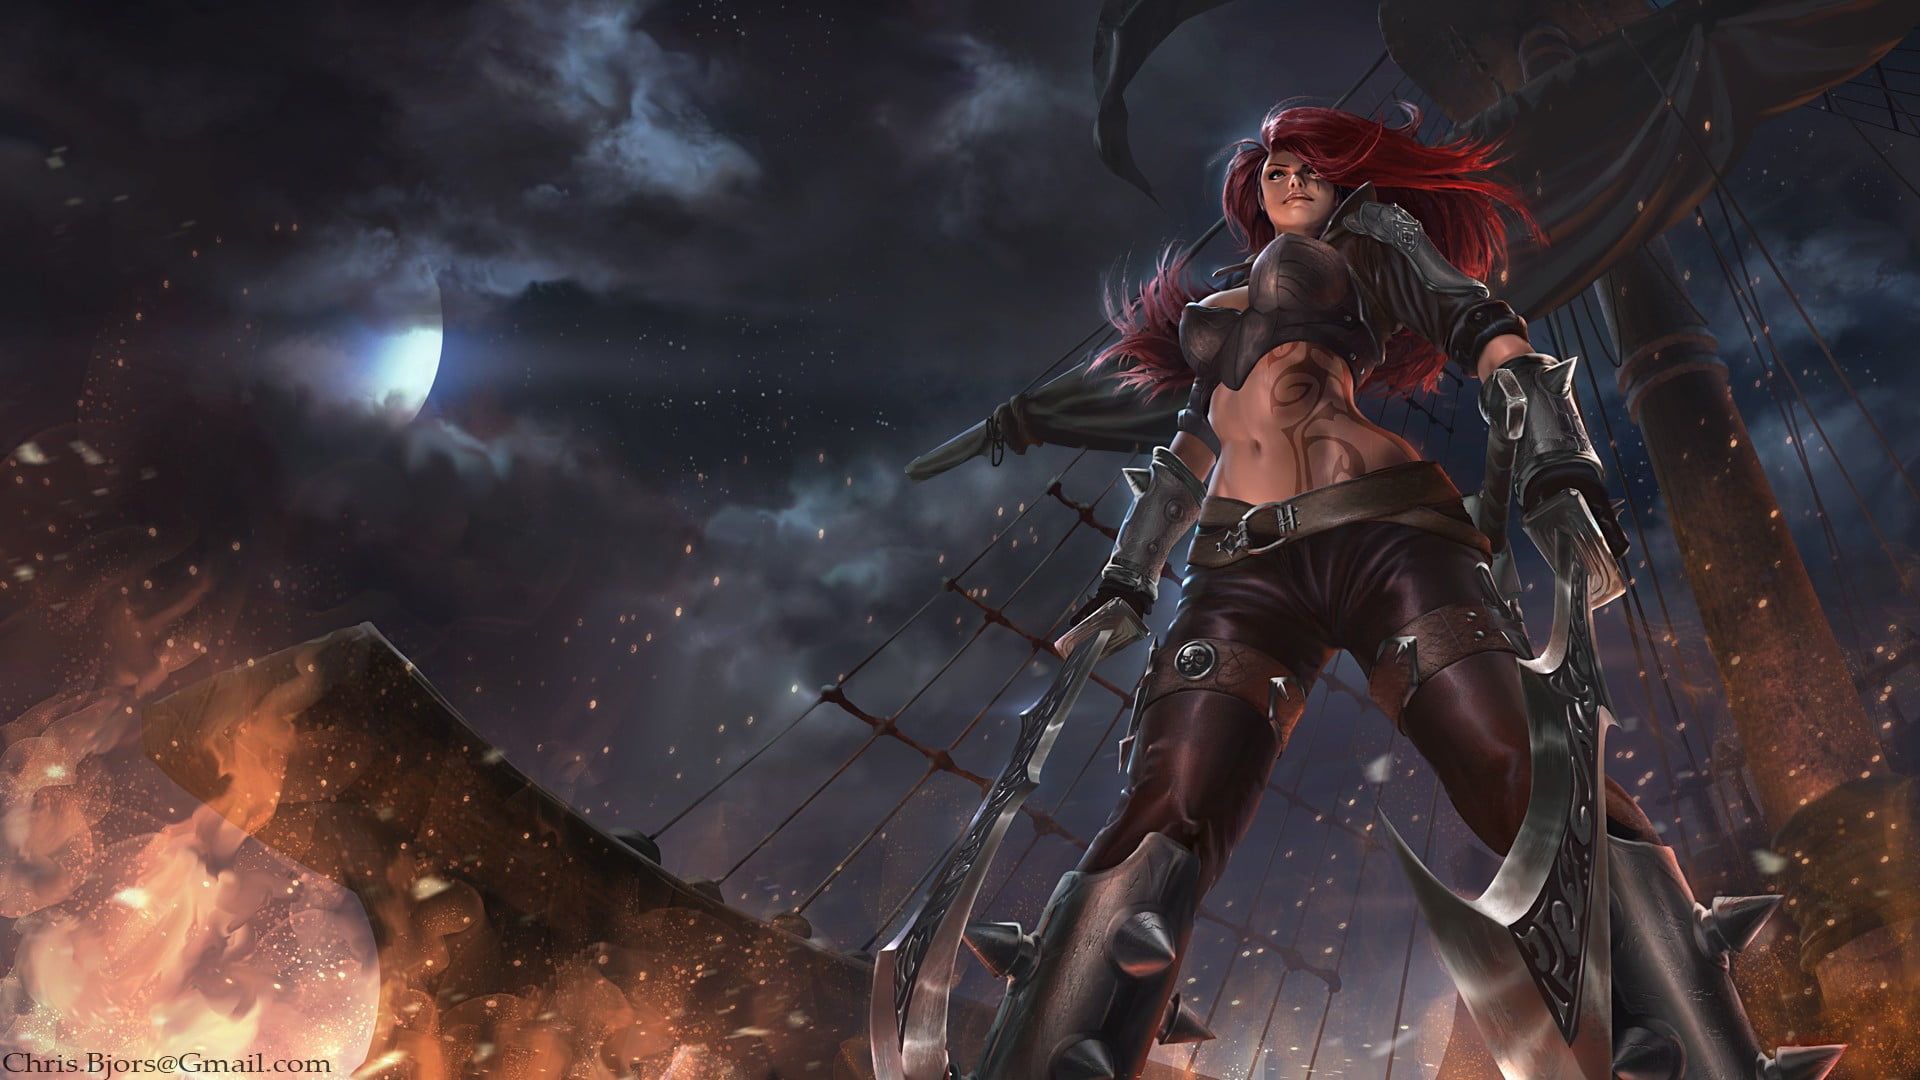 Katarina wallpaper League of Legends video games #redhead #women